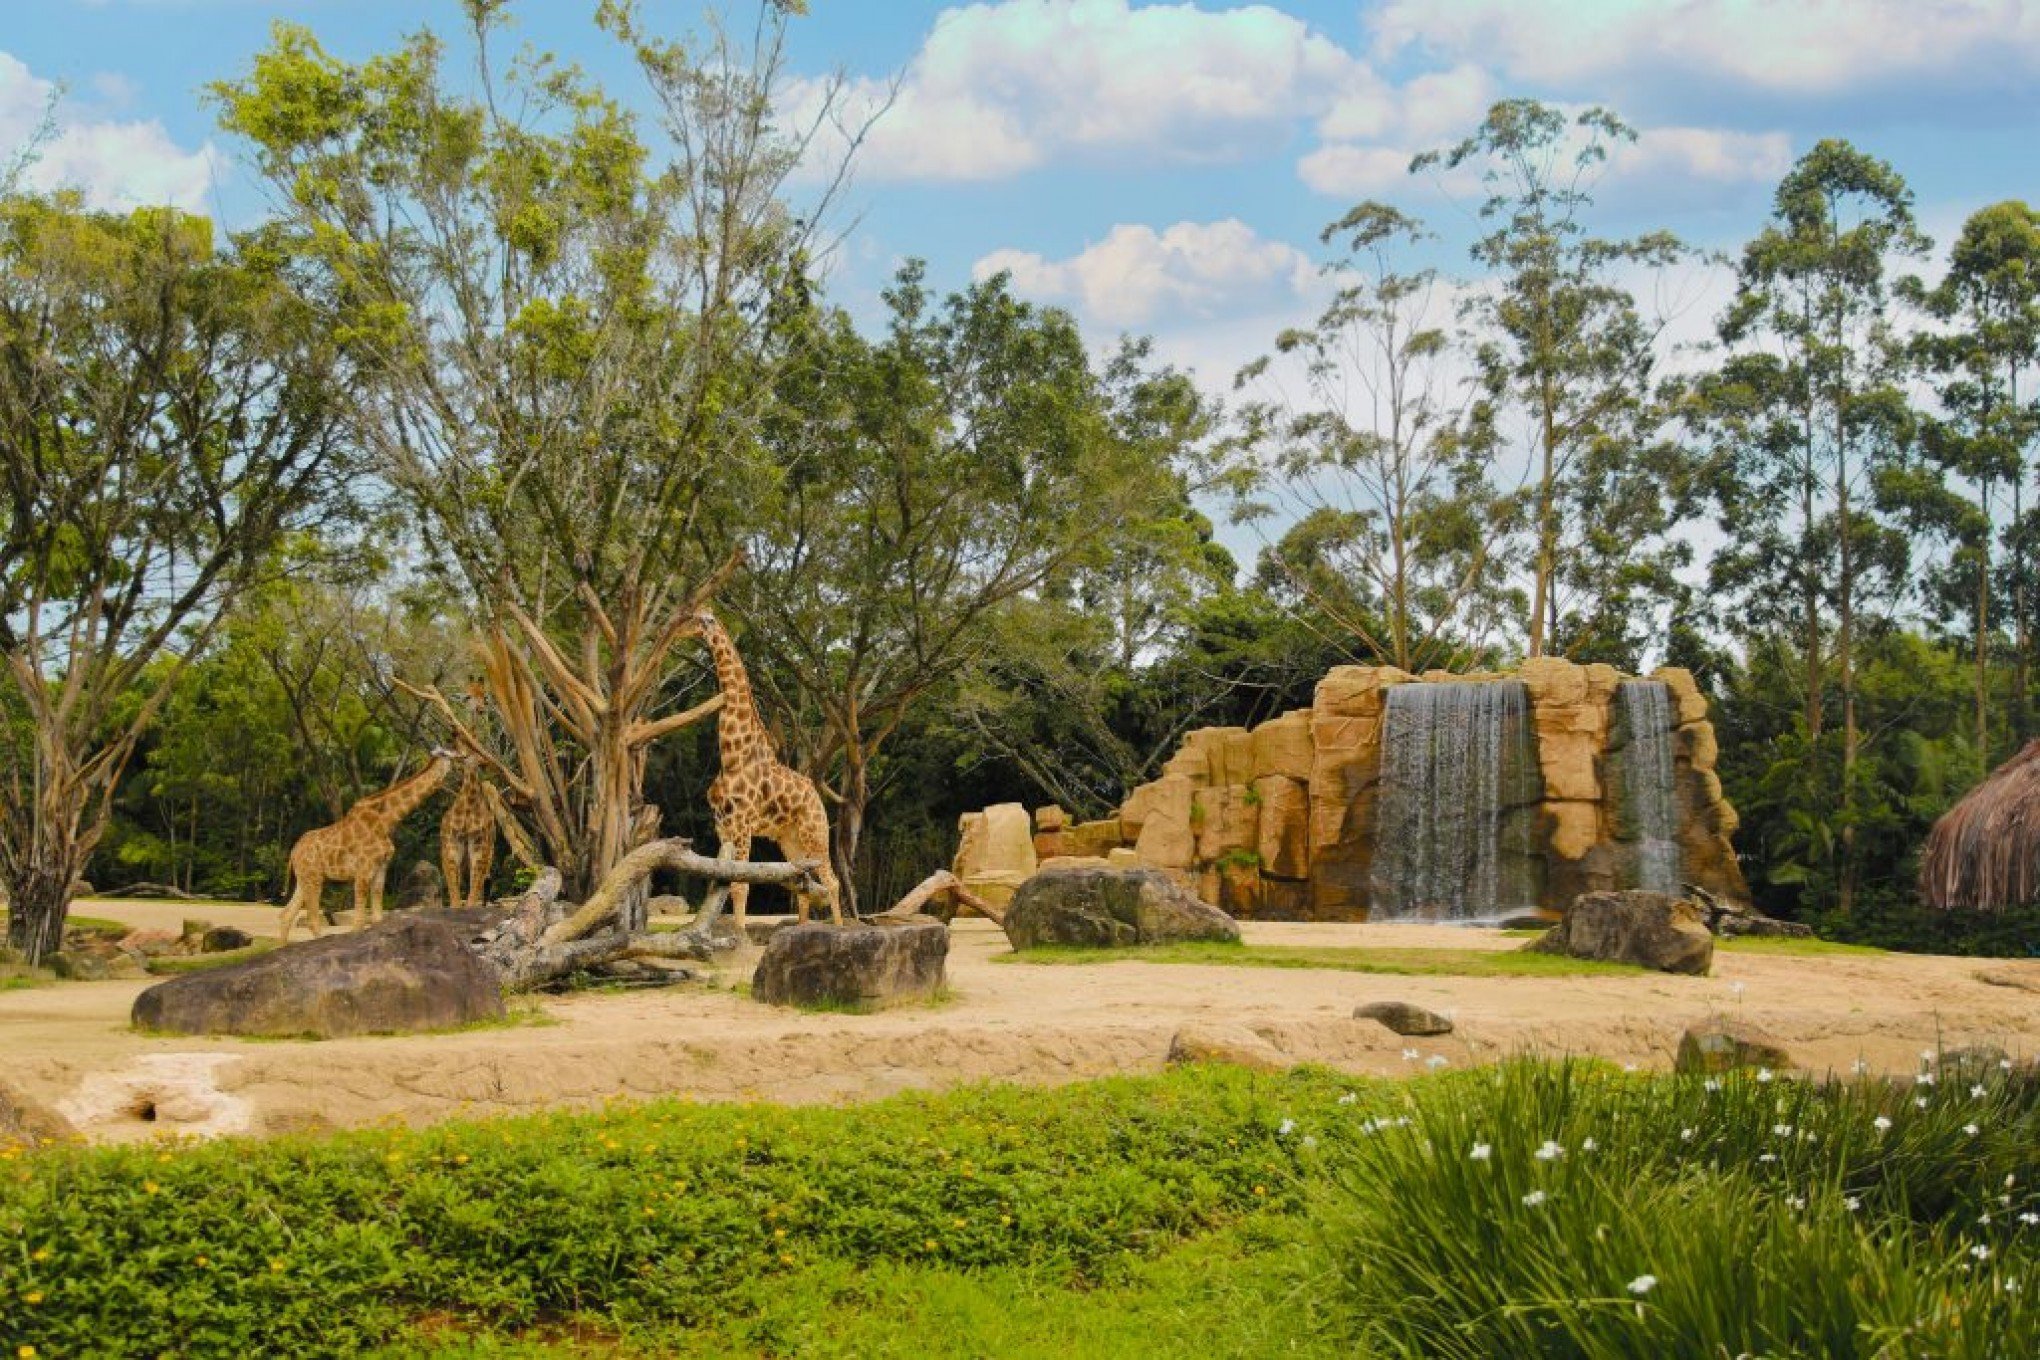 Beto Carrero World desativa zoológico após três décadas de funcionamento